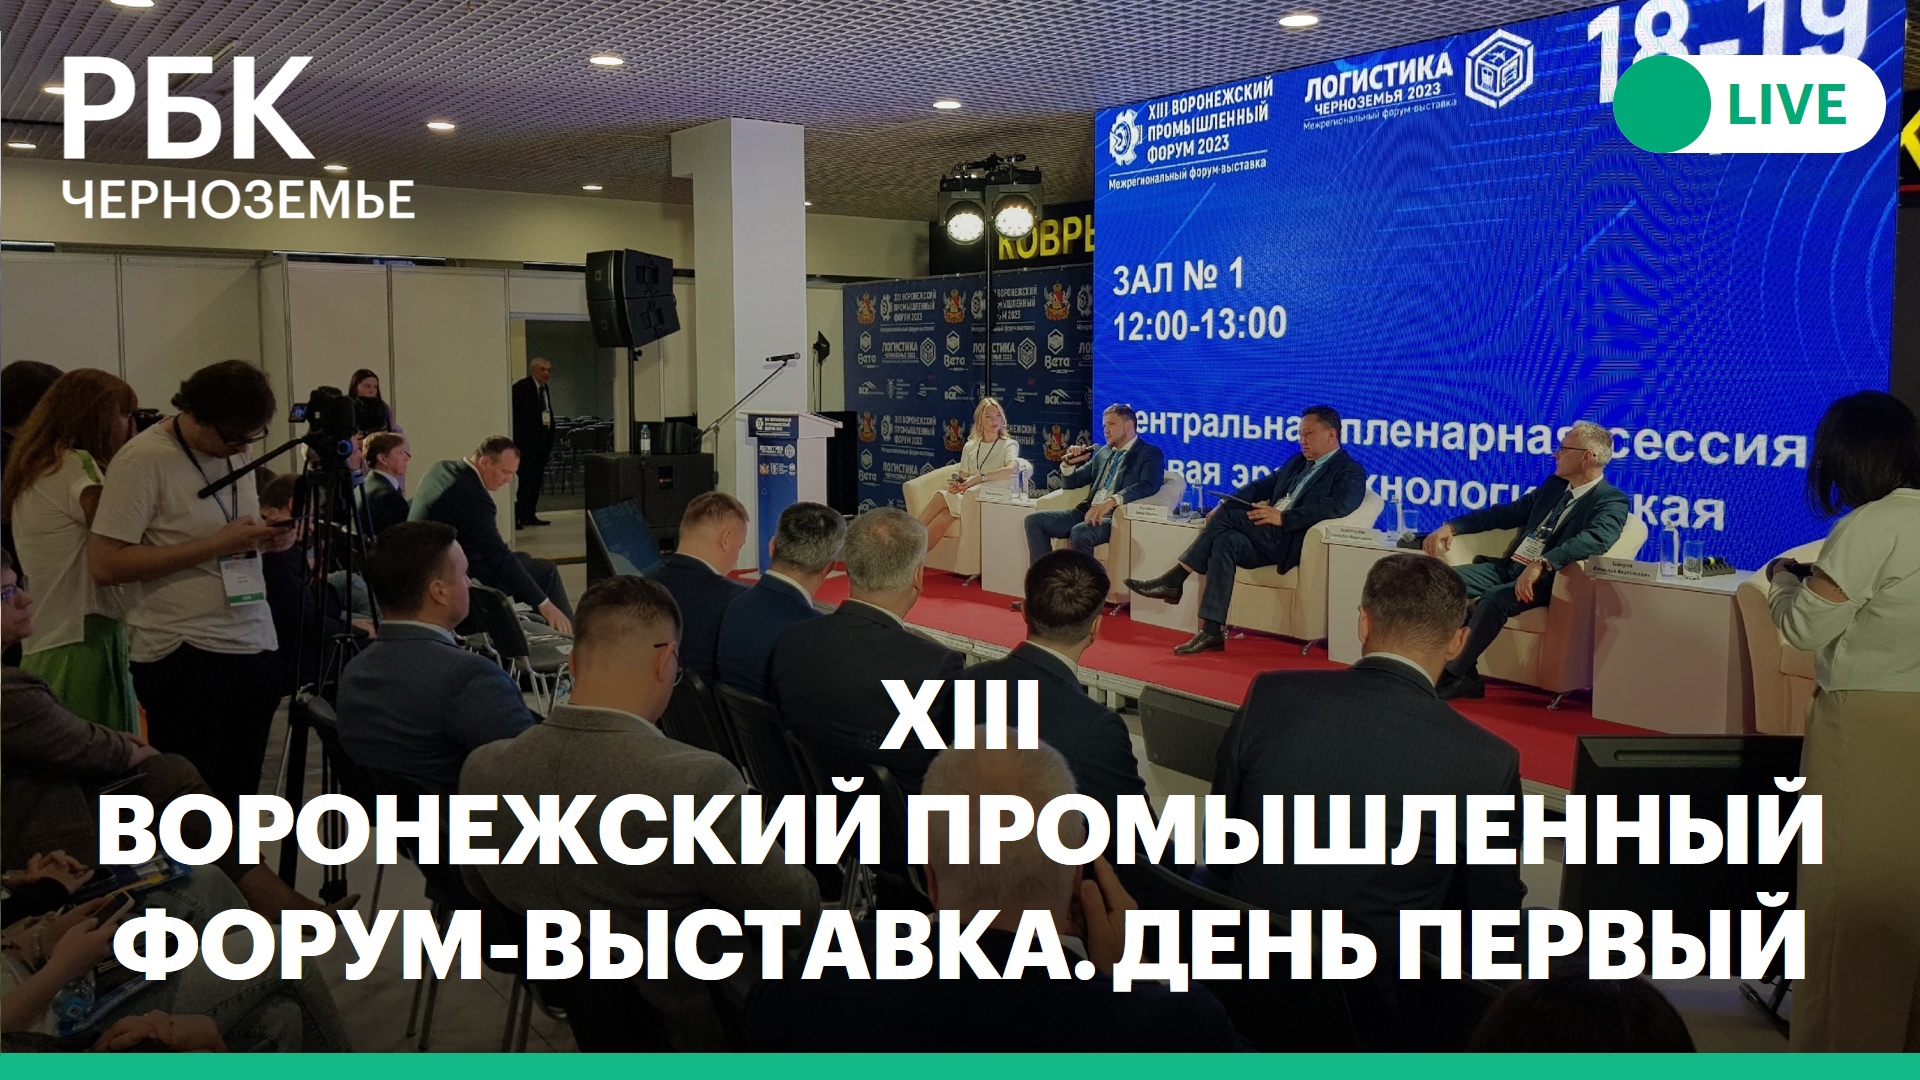 XIII Воронежский промышленный форум-выставка. Трансляция